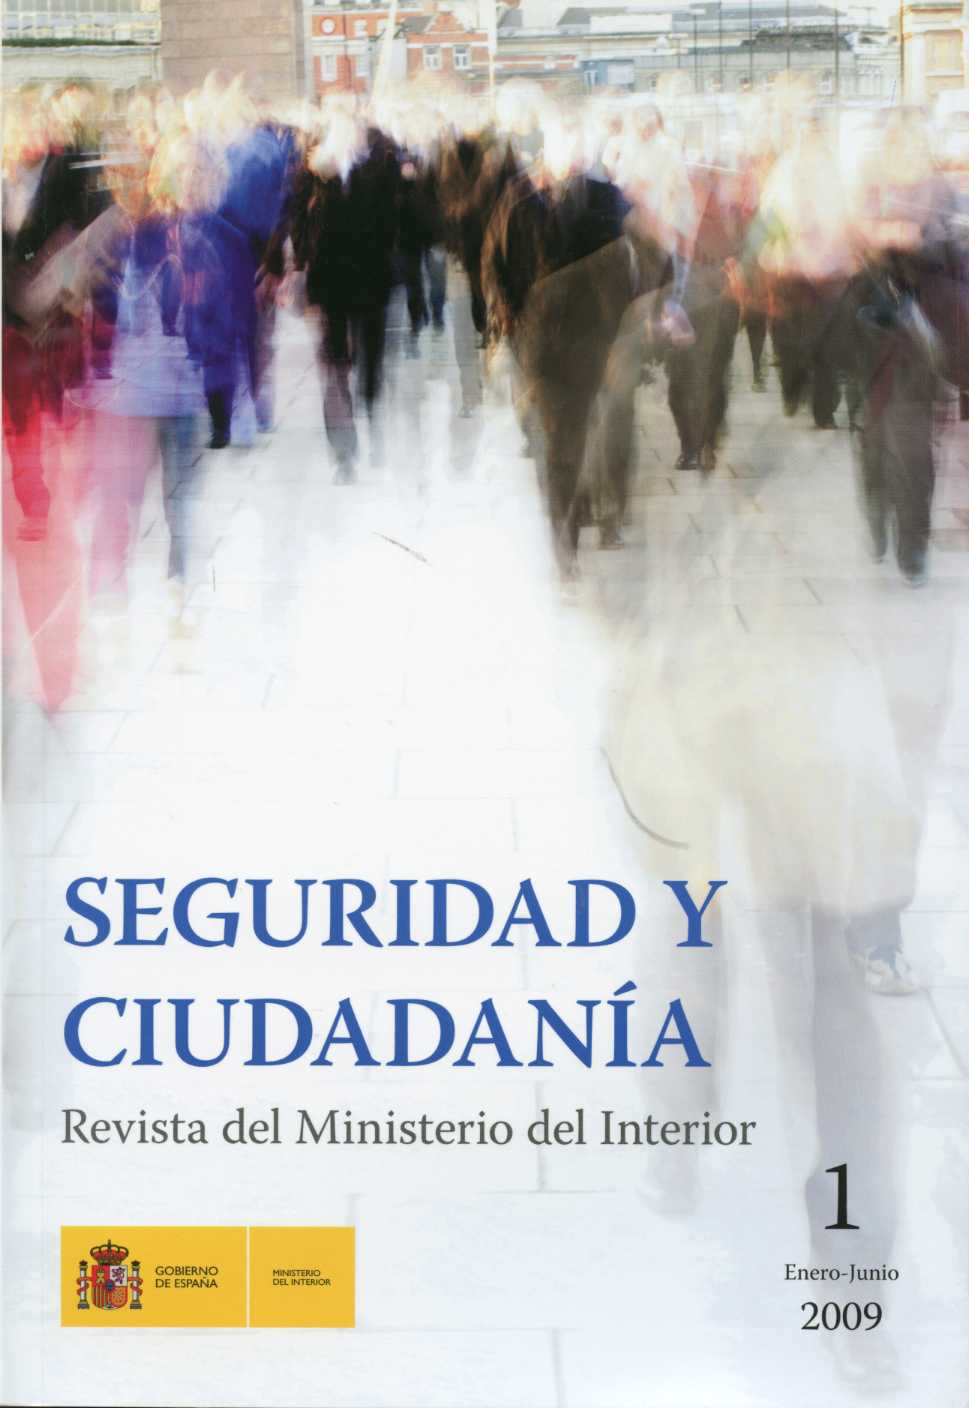 Seguridad y Ciudadanía, 1 Revista del Ministerio del Interior. Nº 1 Enero-Junio 2009-0